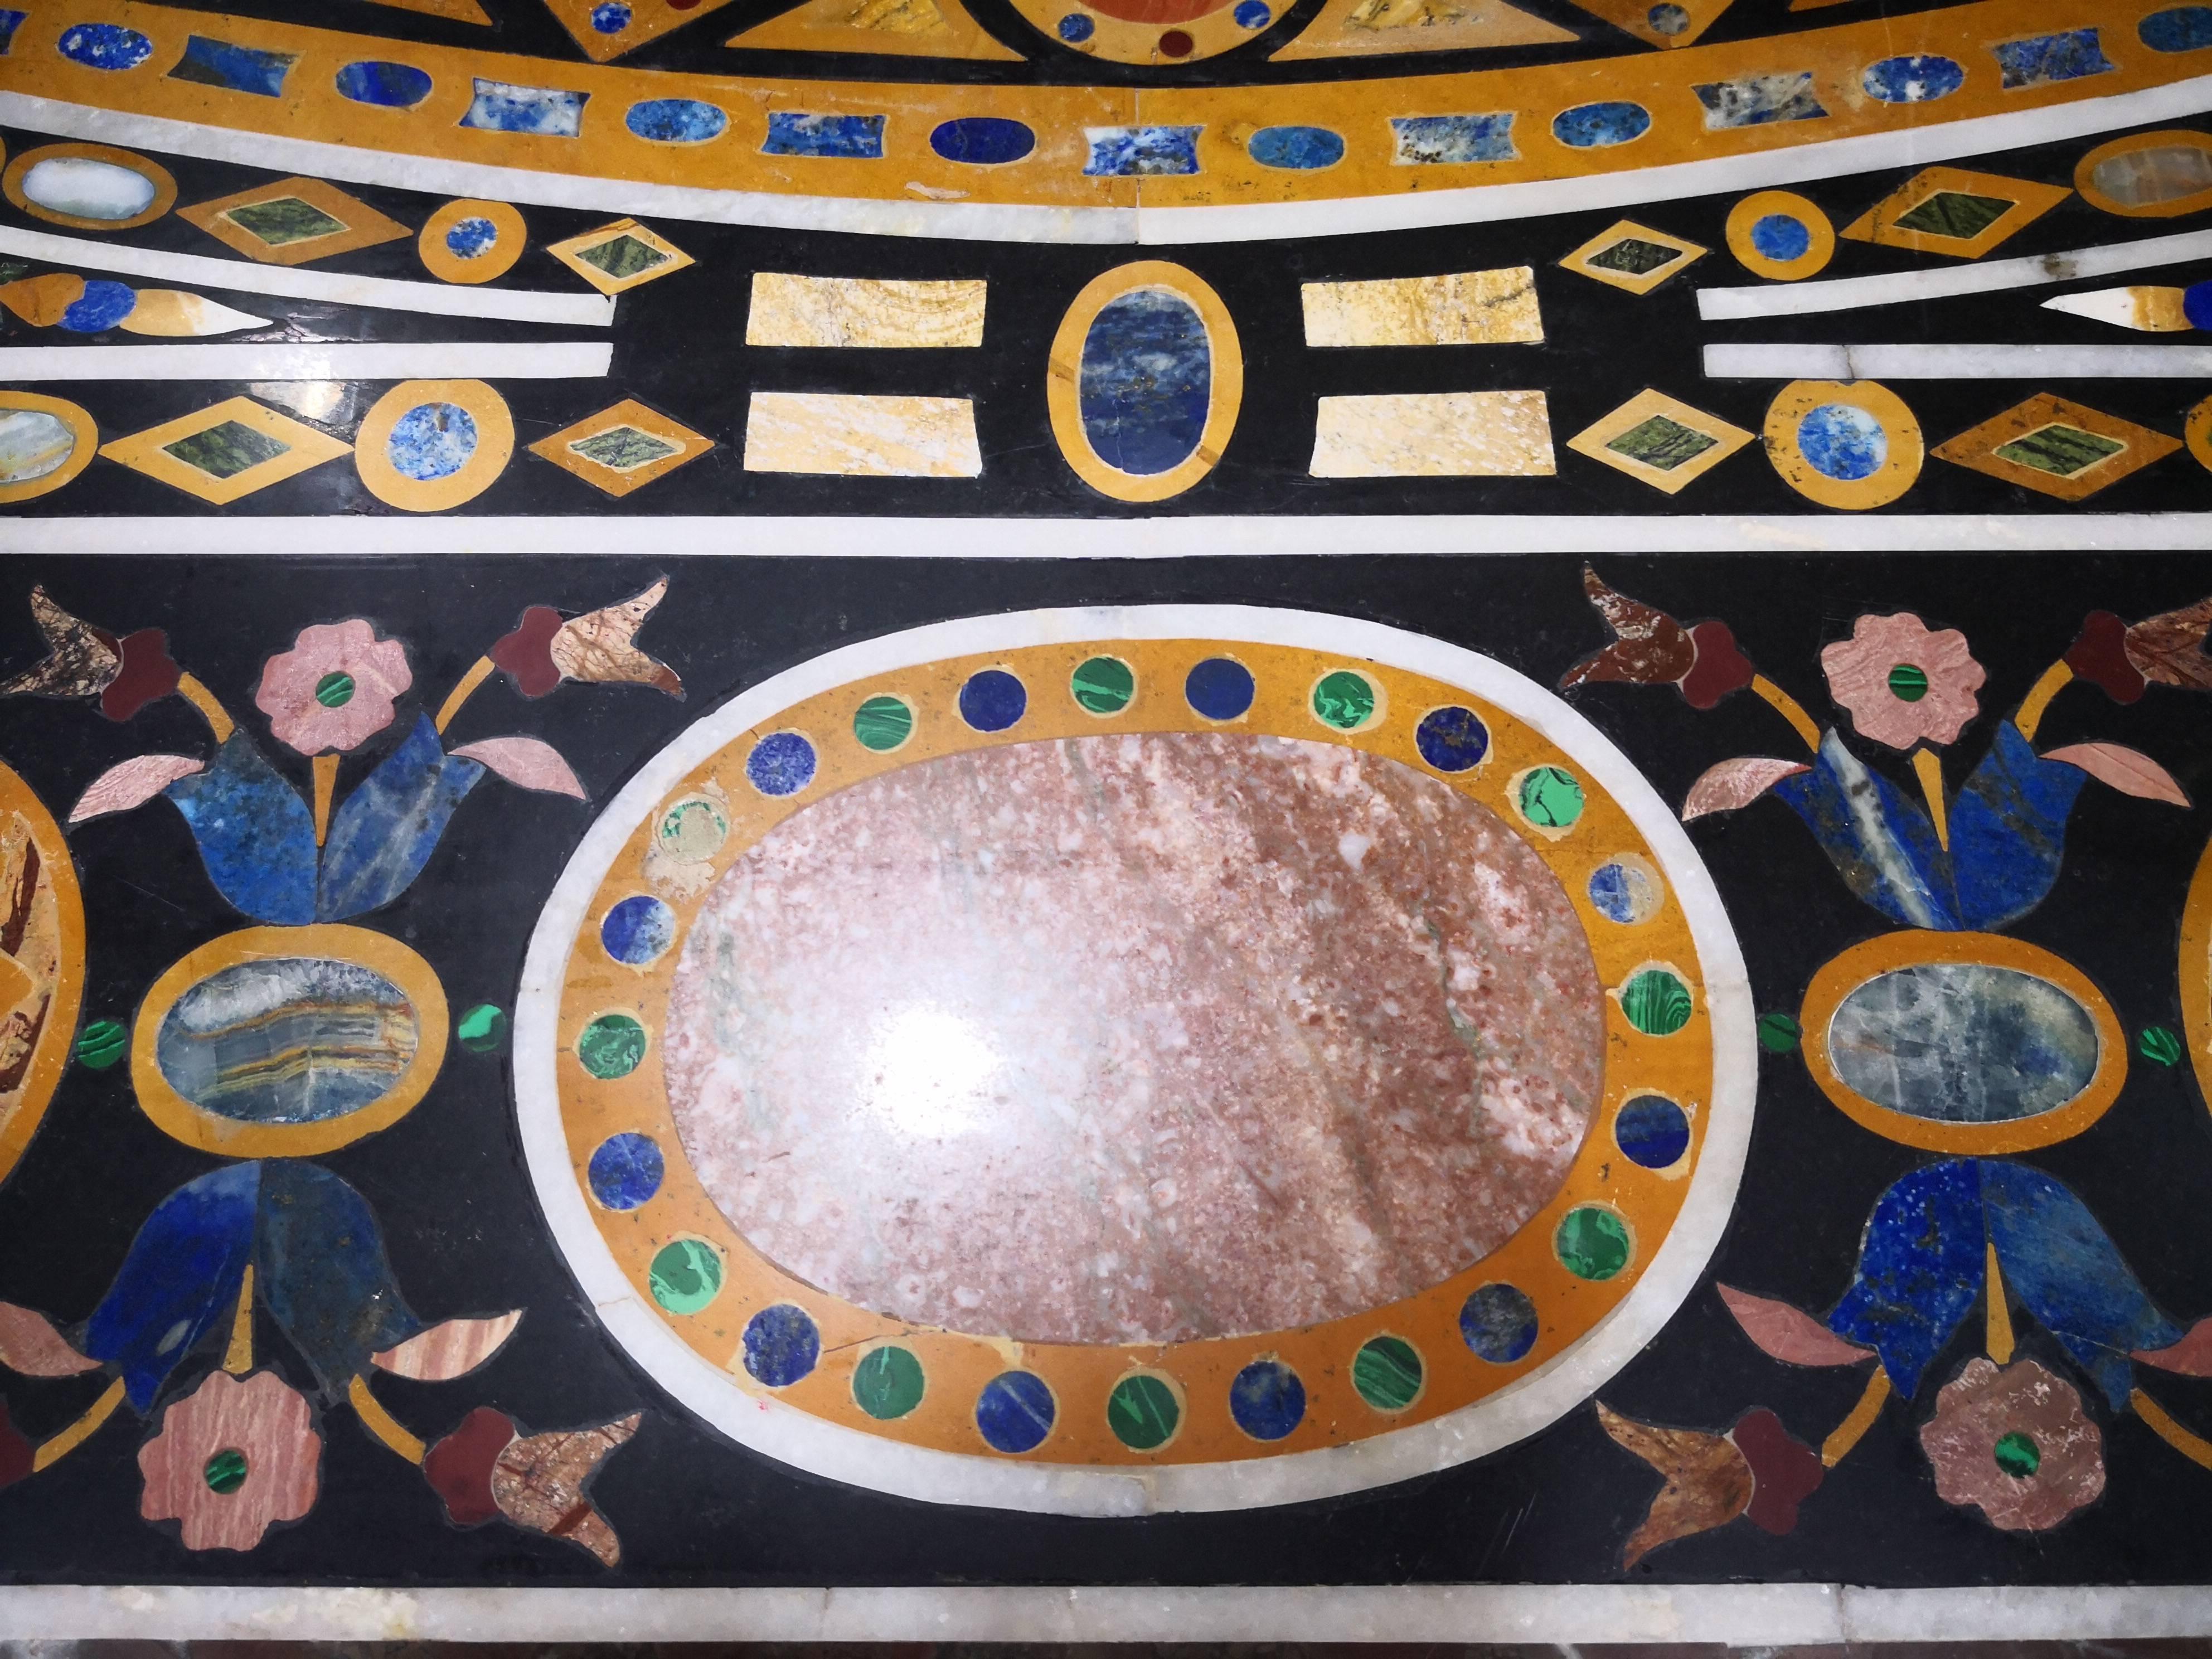 Table de salle à manger de dix places, fabriquée à la main, en mosaïque italienne de pietra dura, composée de pierres semi-précieuses telles que le lapis bleu, la turquoise et la malachite verte.

Il s'agit de la reproduction d'un plateau de table